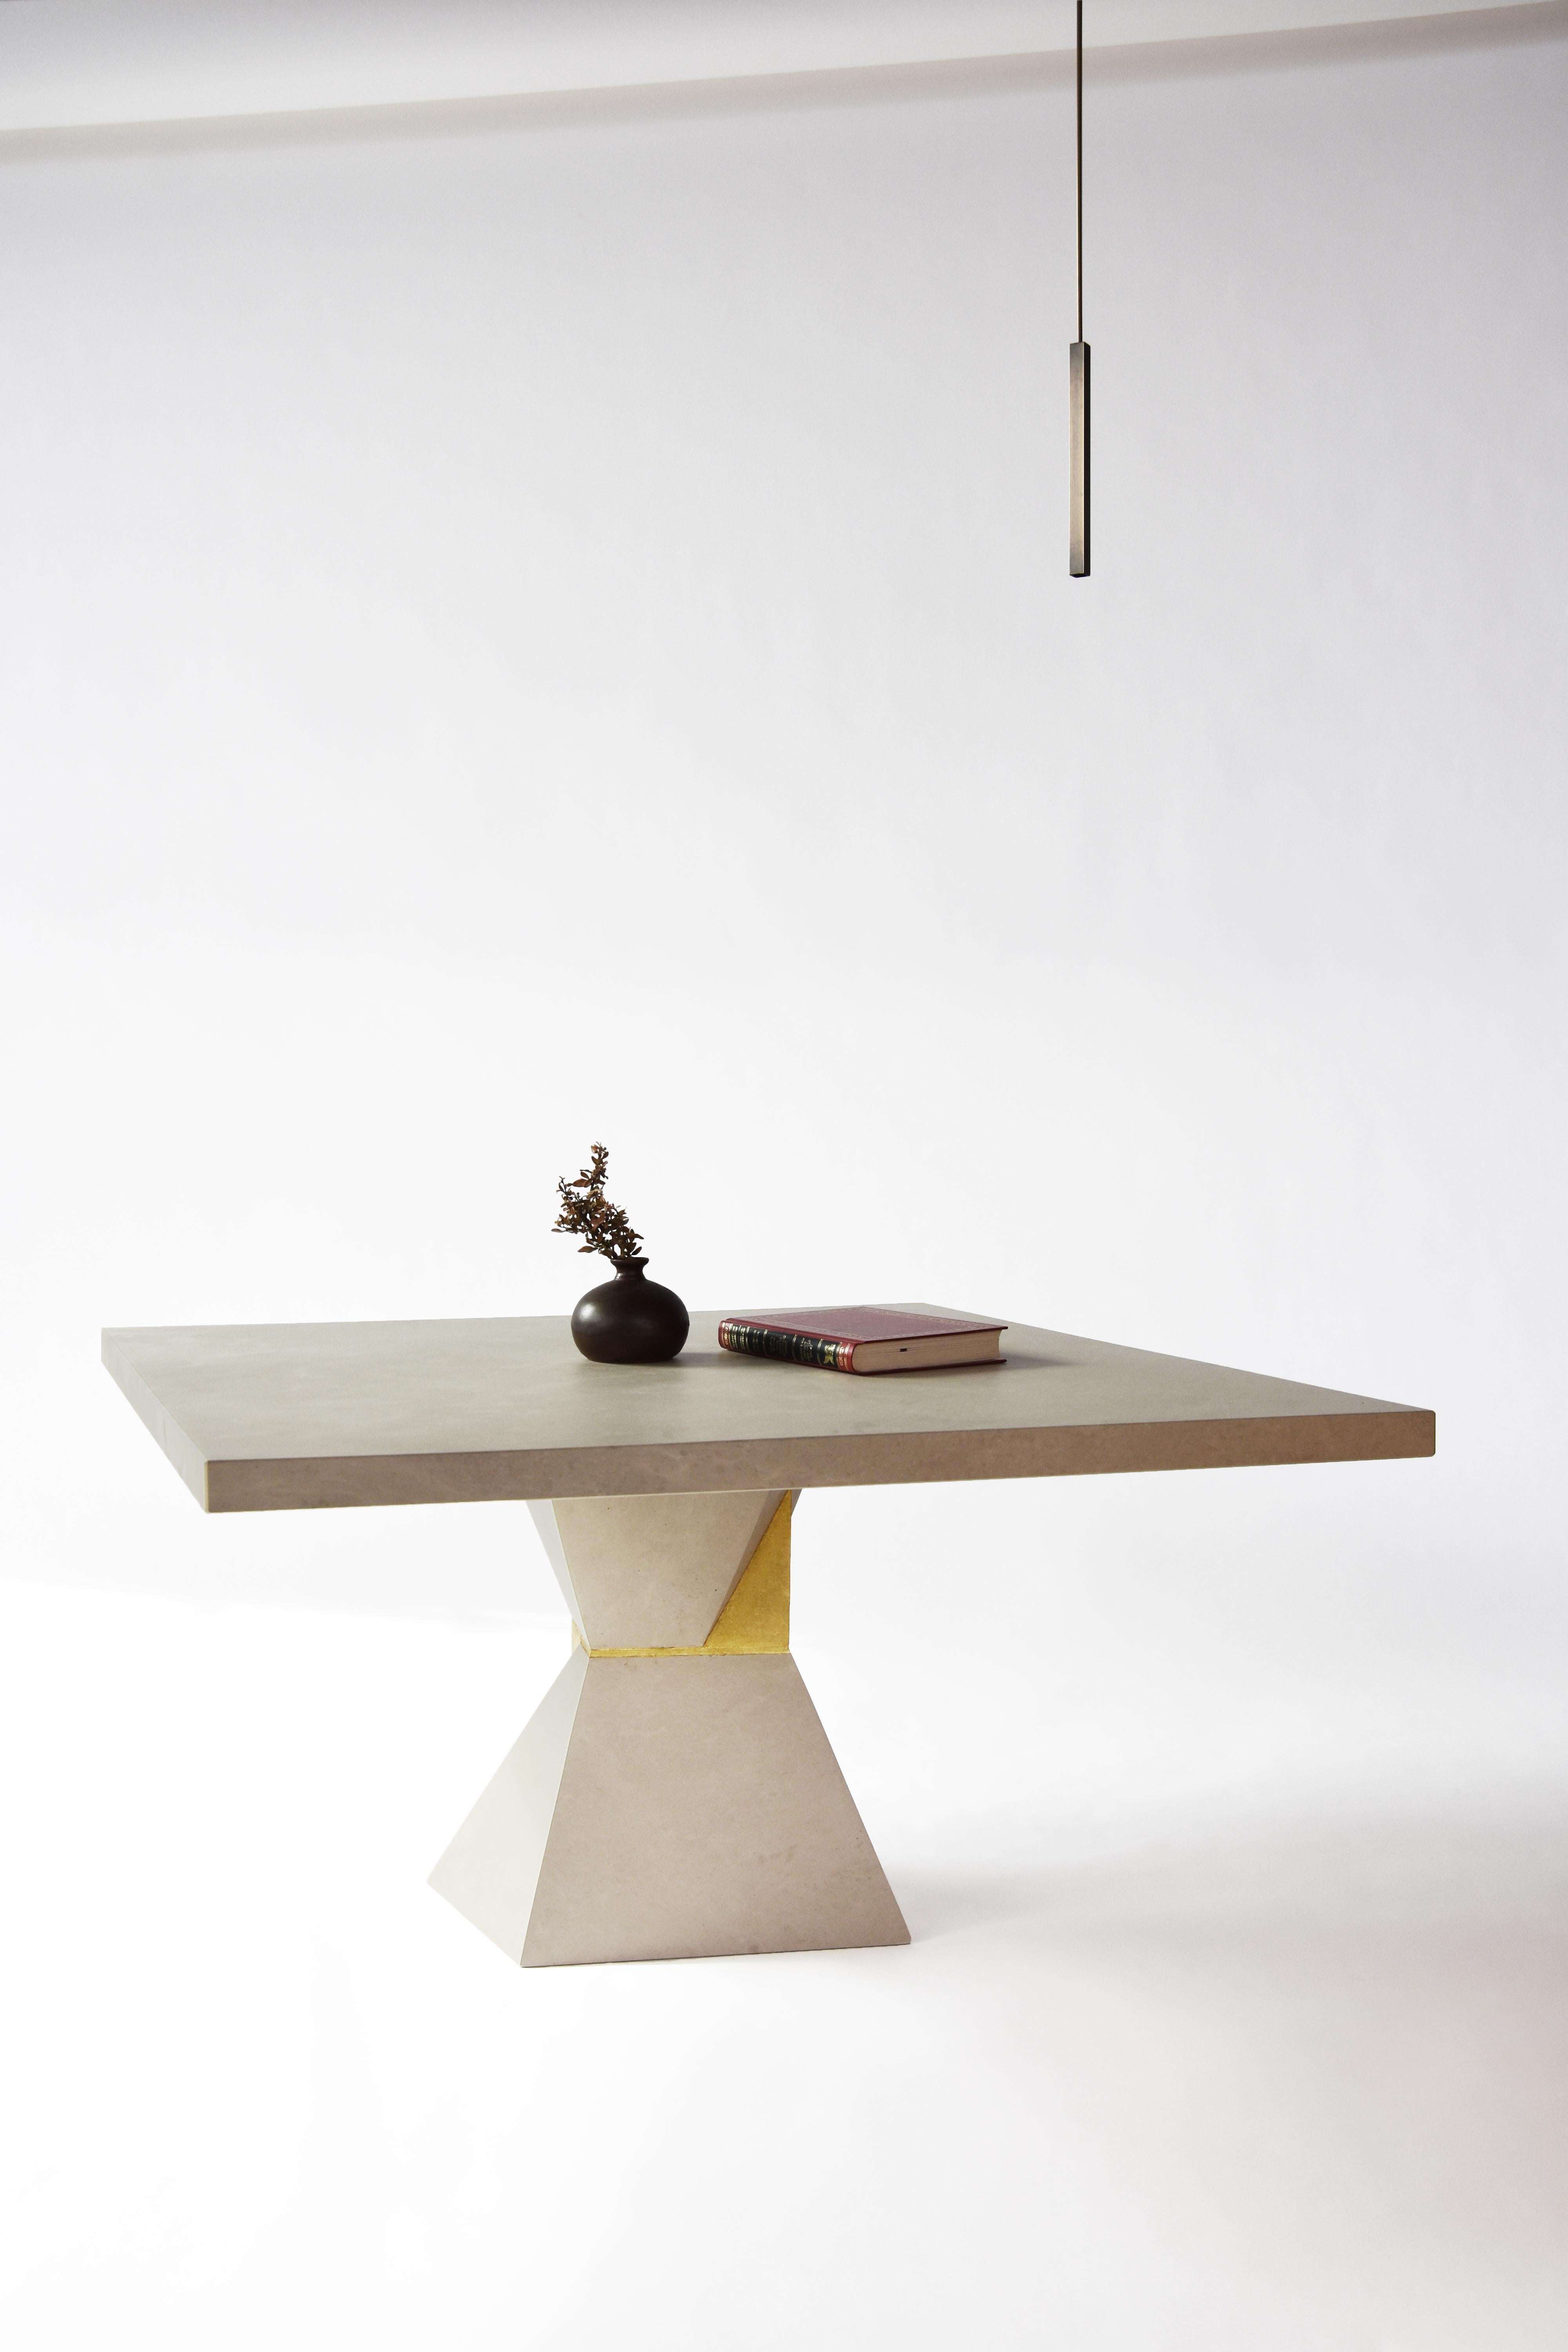 Table Inka d'Eichkorn
Dimensions : D160 x H74 cm
Matériaux : pierre calcaire, feuilles d'or.
Disponible en format table basse ou table de salle à manger.

Une pierre calcaire, Ocean Beige, dont la surface a été travaillée à la main à partir de la